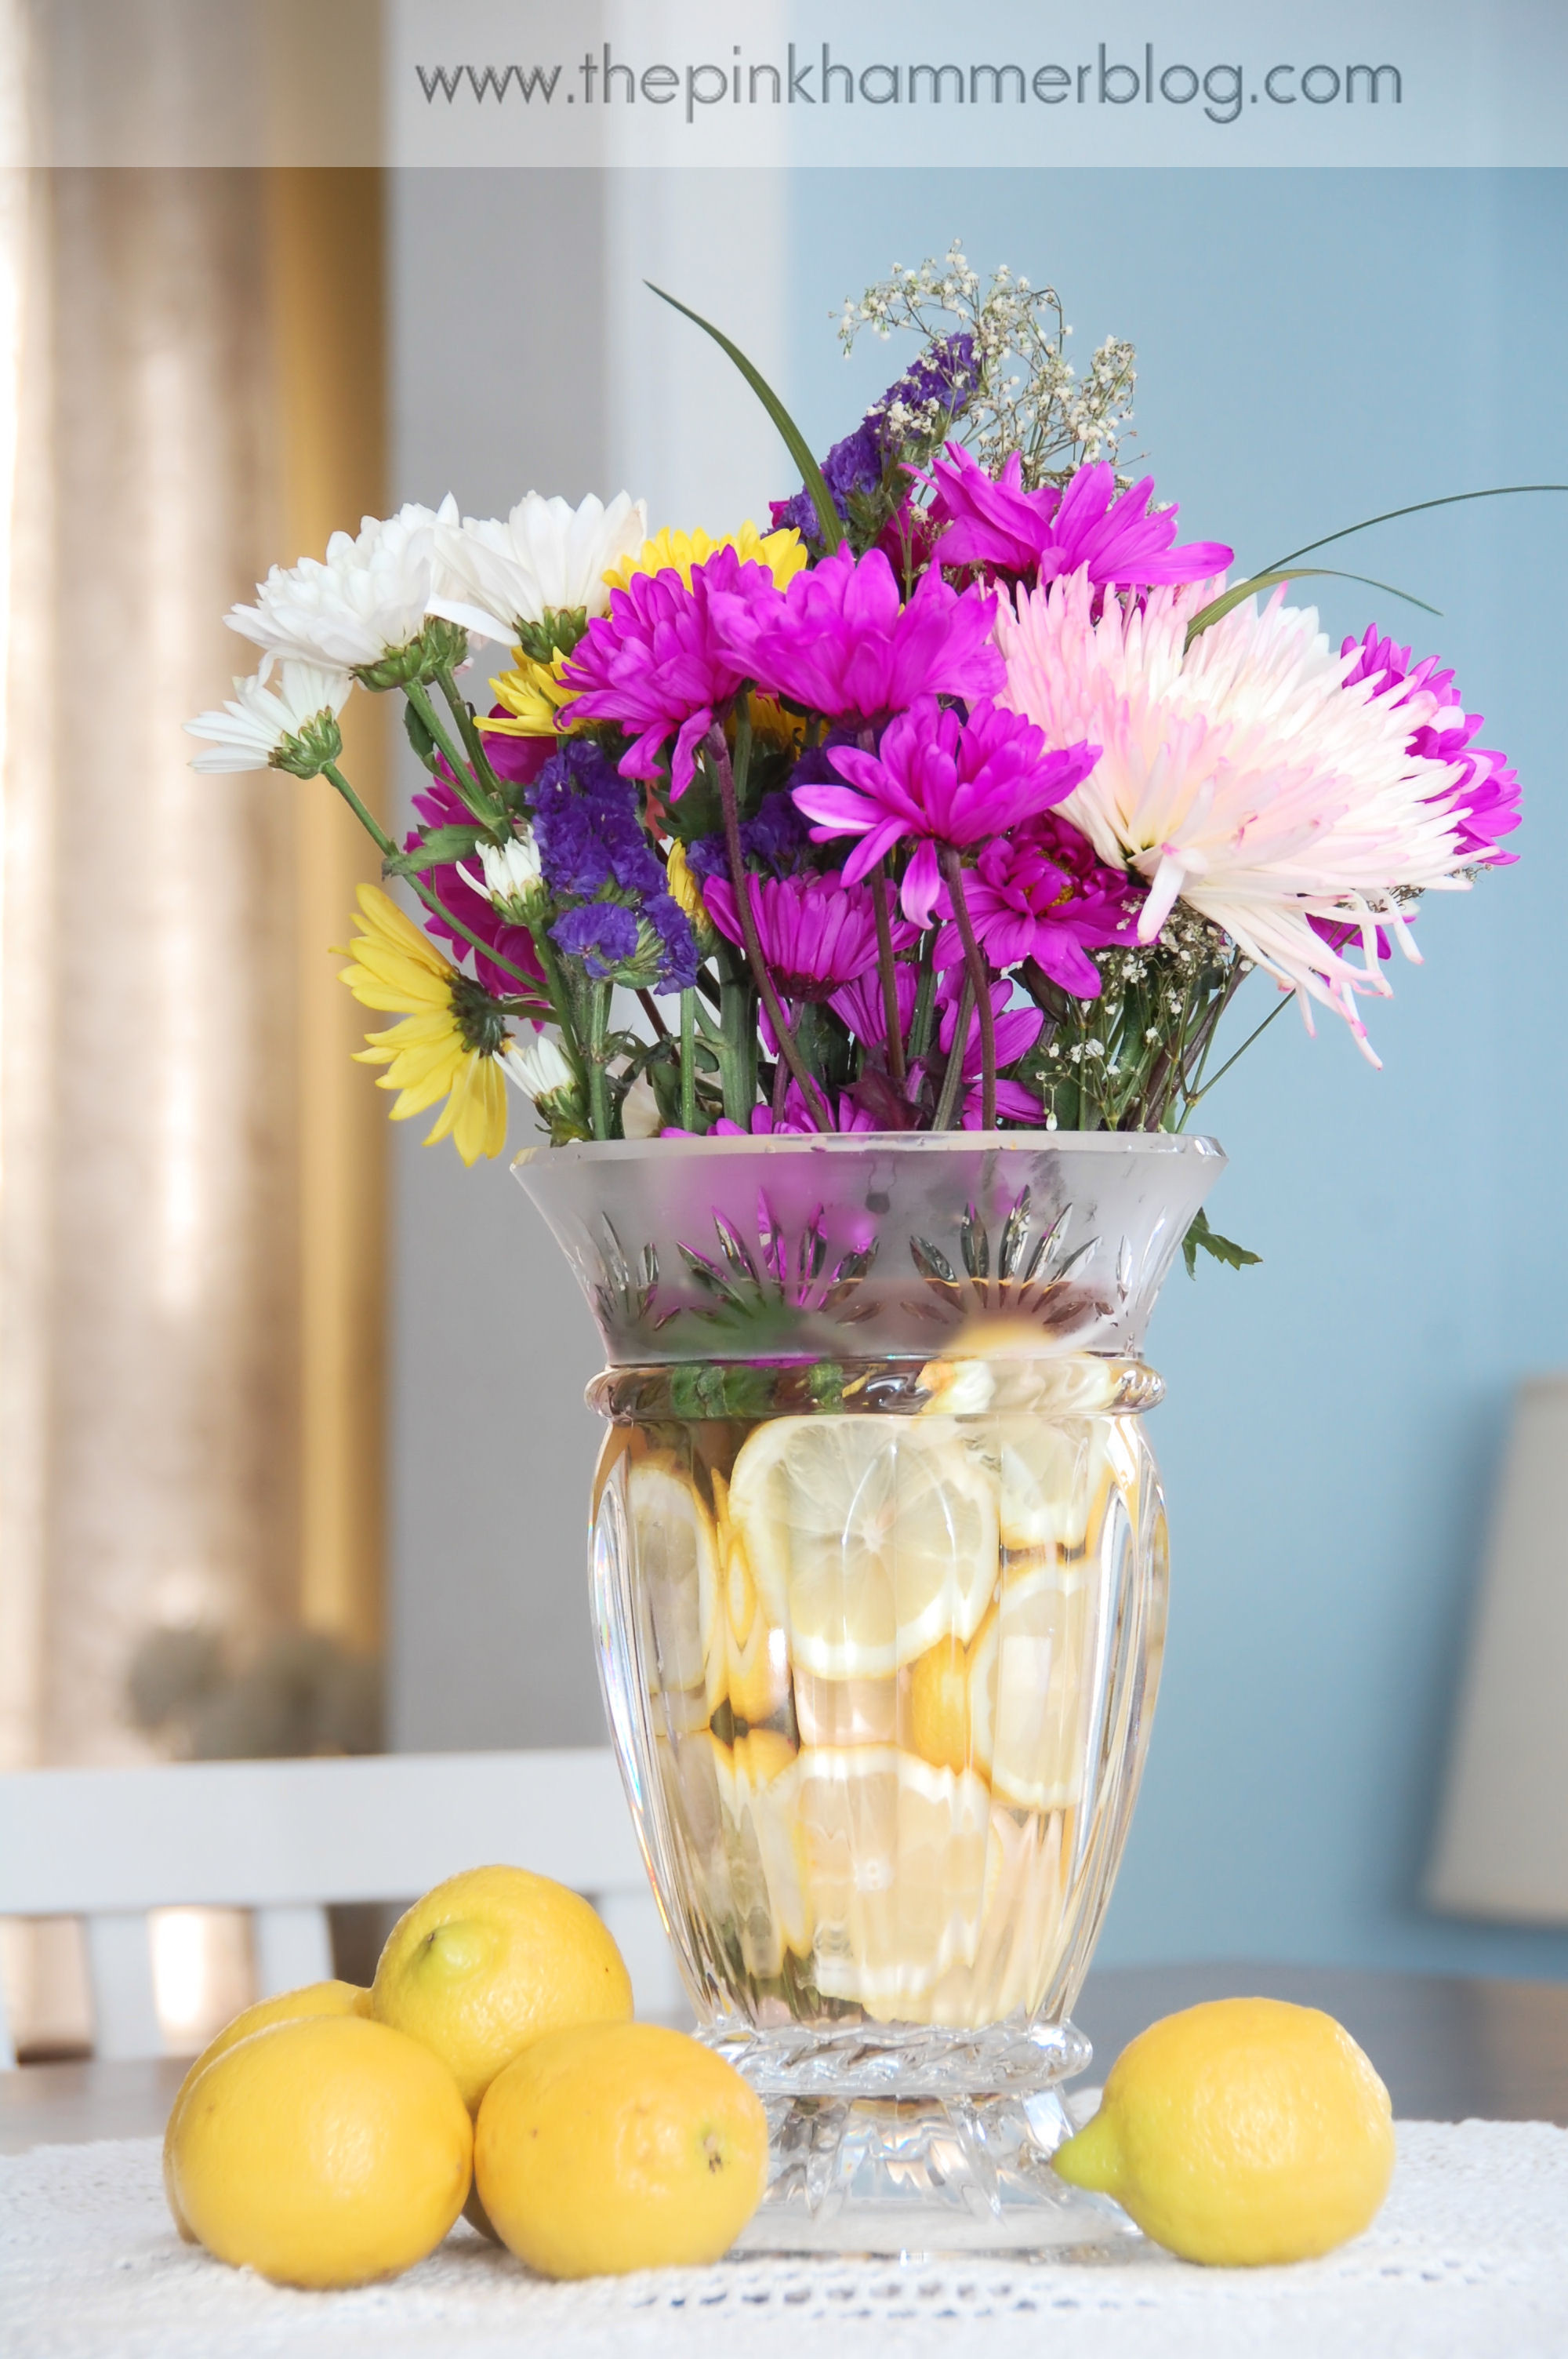 Best ideas about DIY Floral Arrangements
. Save or Pin A fruitful centerpiece DIY Unique floral arrangement Now.